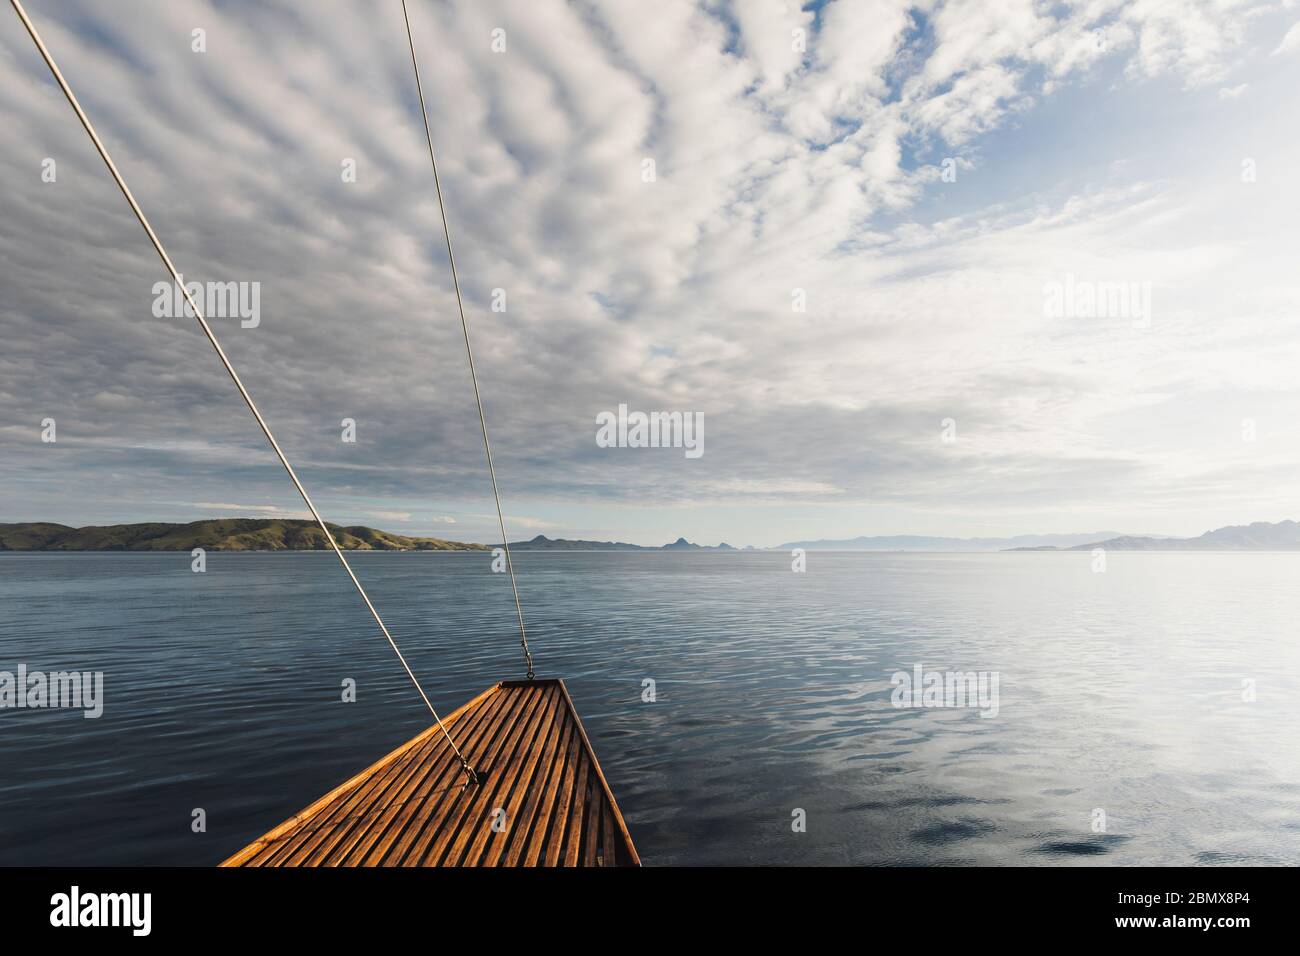 Coucher de soleil vue idyllique sur l'océan depuis un bateau en bois. Fond marin. Croisière ou croisière en yacht. Banque D'Images